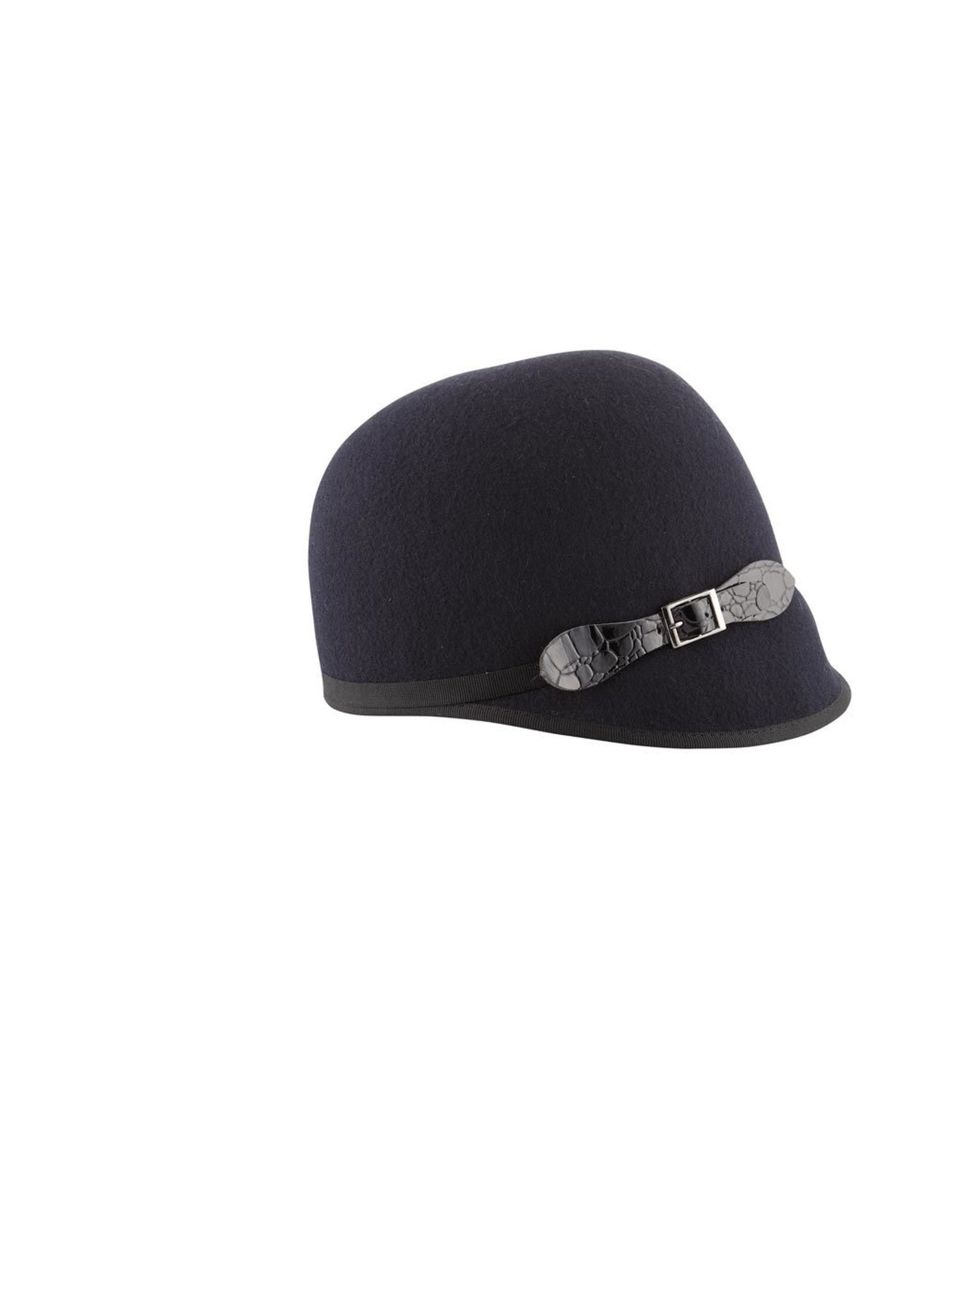 <p><a href="http://uk.accessorize.com/view/product/uk_catalog/acc_5,acc_5.29/2910624100">Accessorize</a> patent buckle felt hat, £24</p>